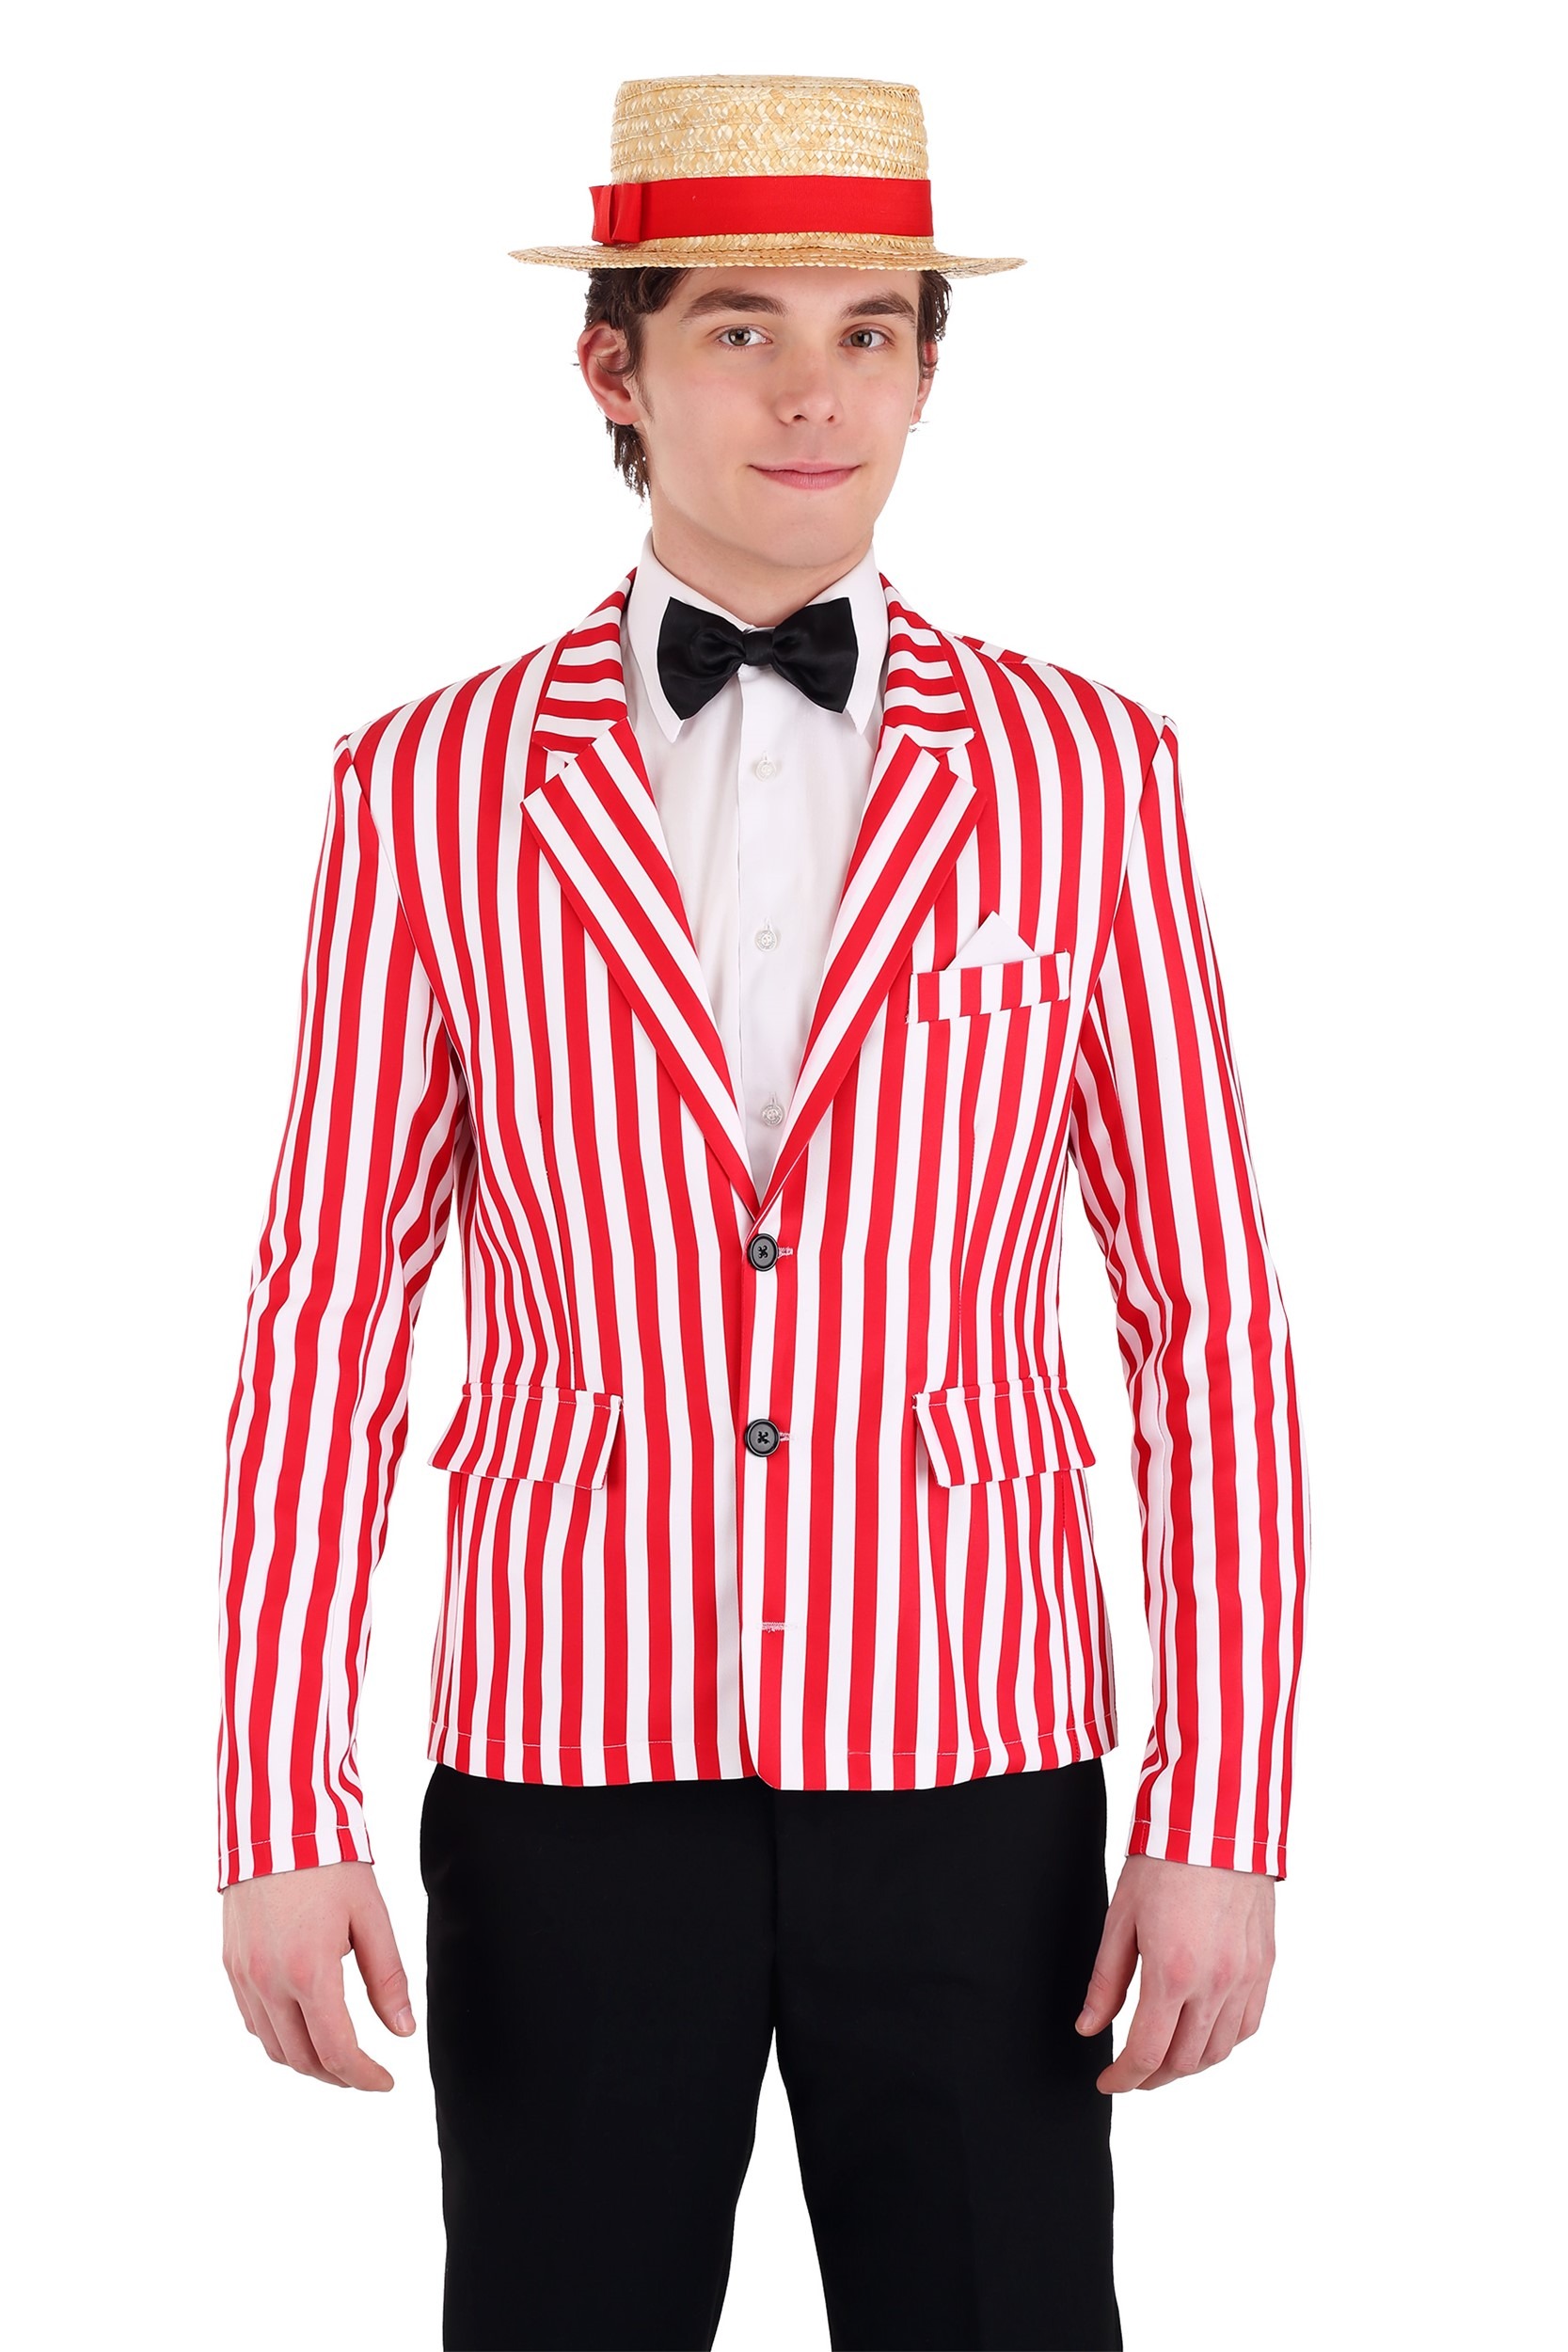 Candy Striped Jacket Men's Fancy Dress Costume